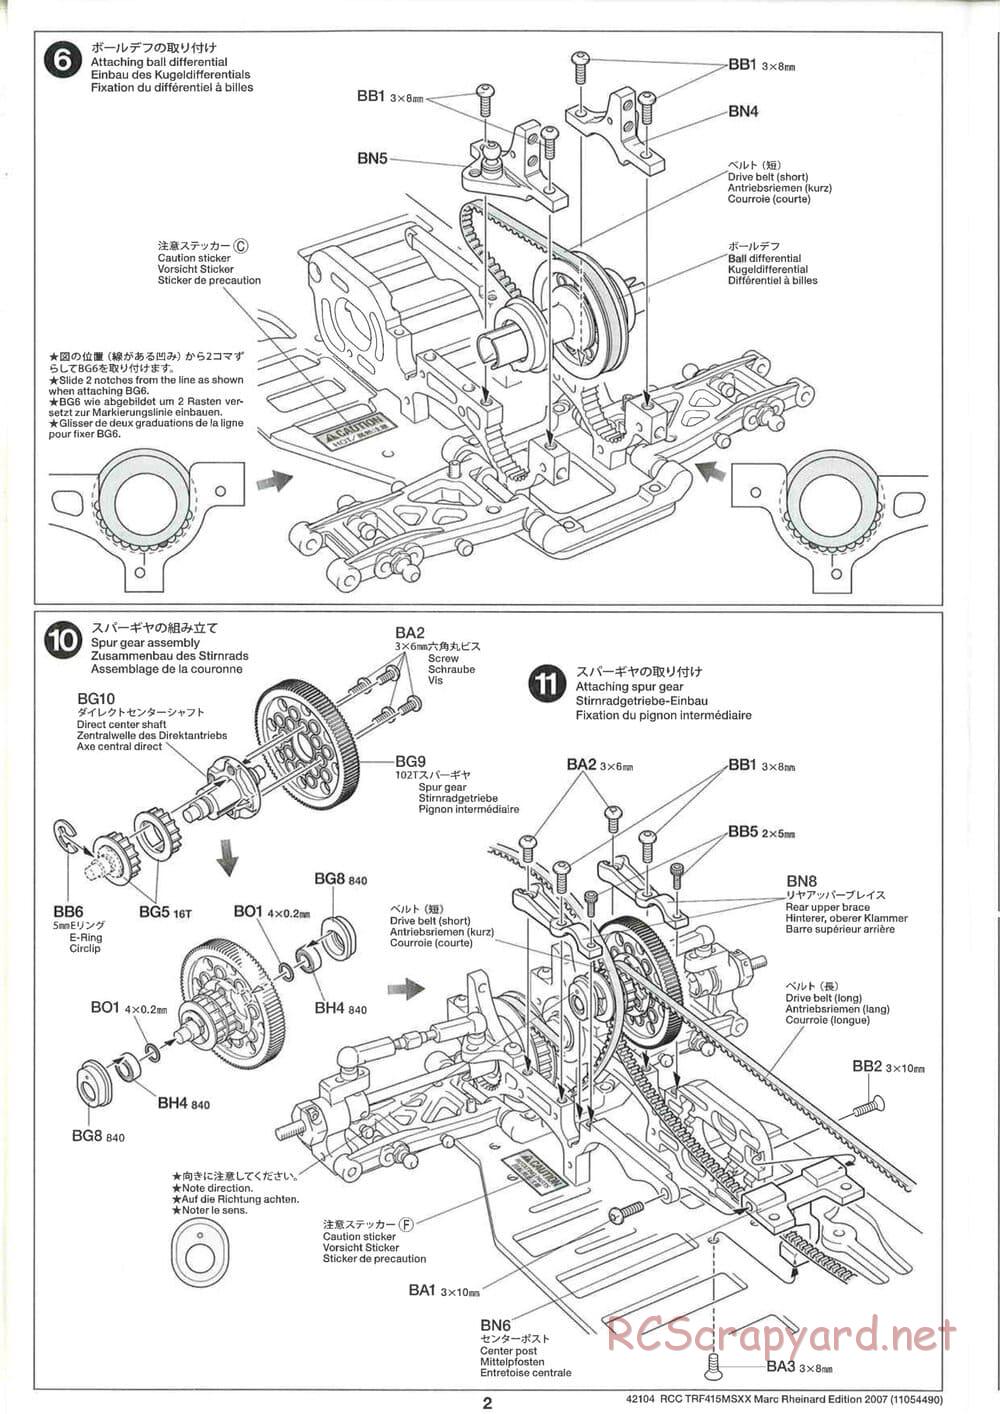 Tamiya - TRF415 MSXX - Marc Rheinard Edition 2007 Chassis - Manual - Page 2